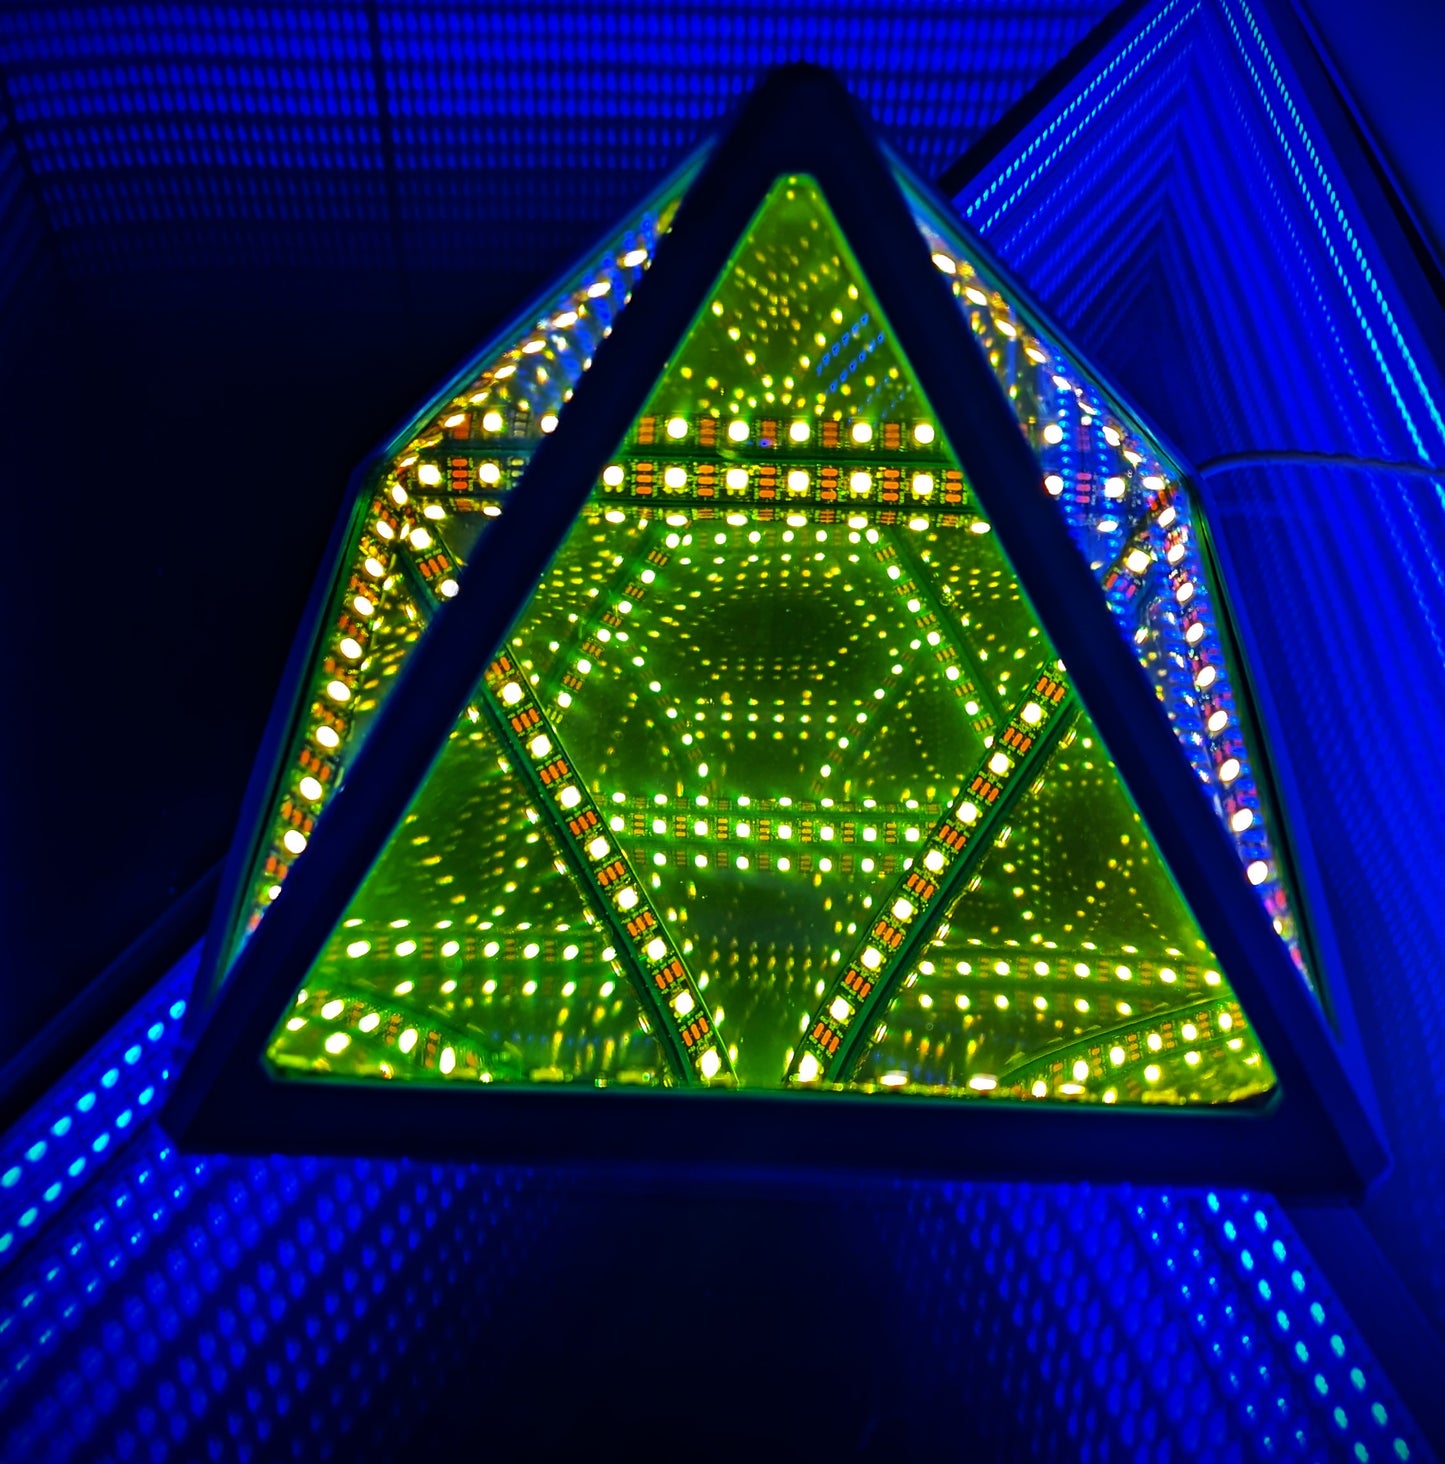 Infinity Pyramid